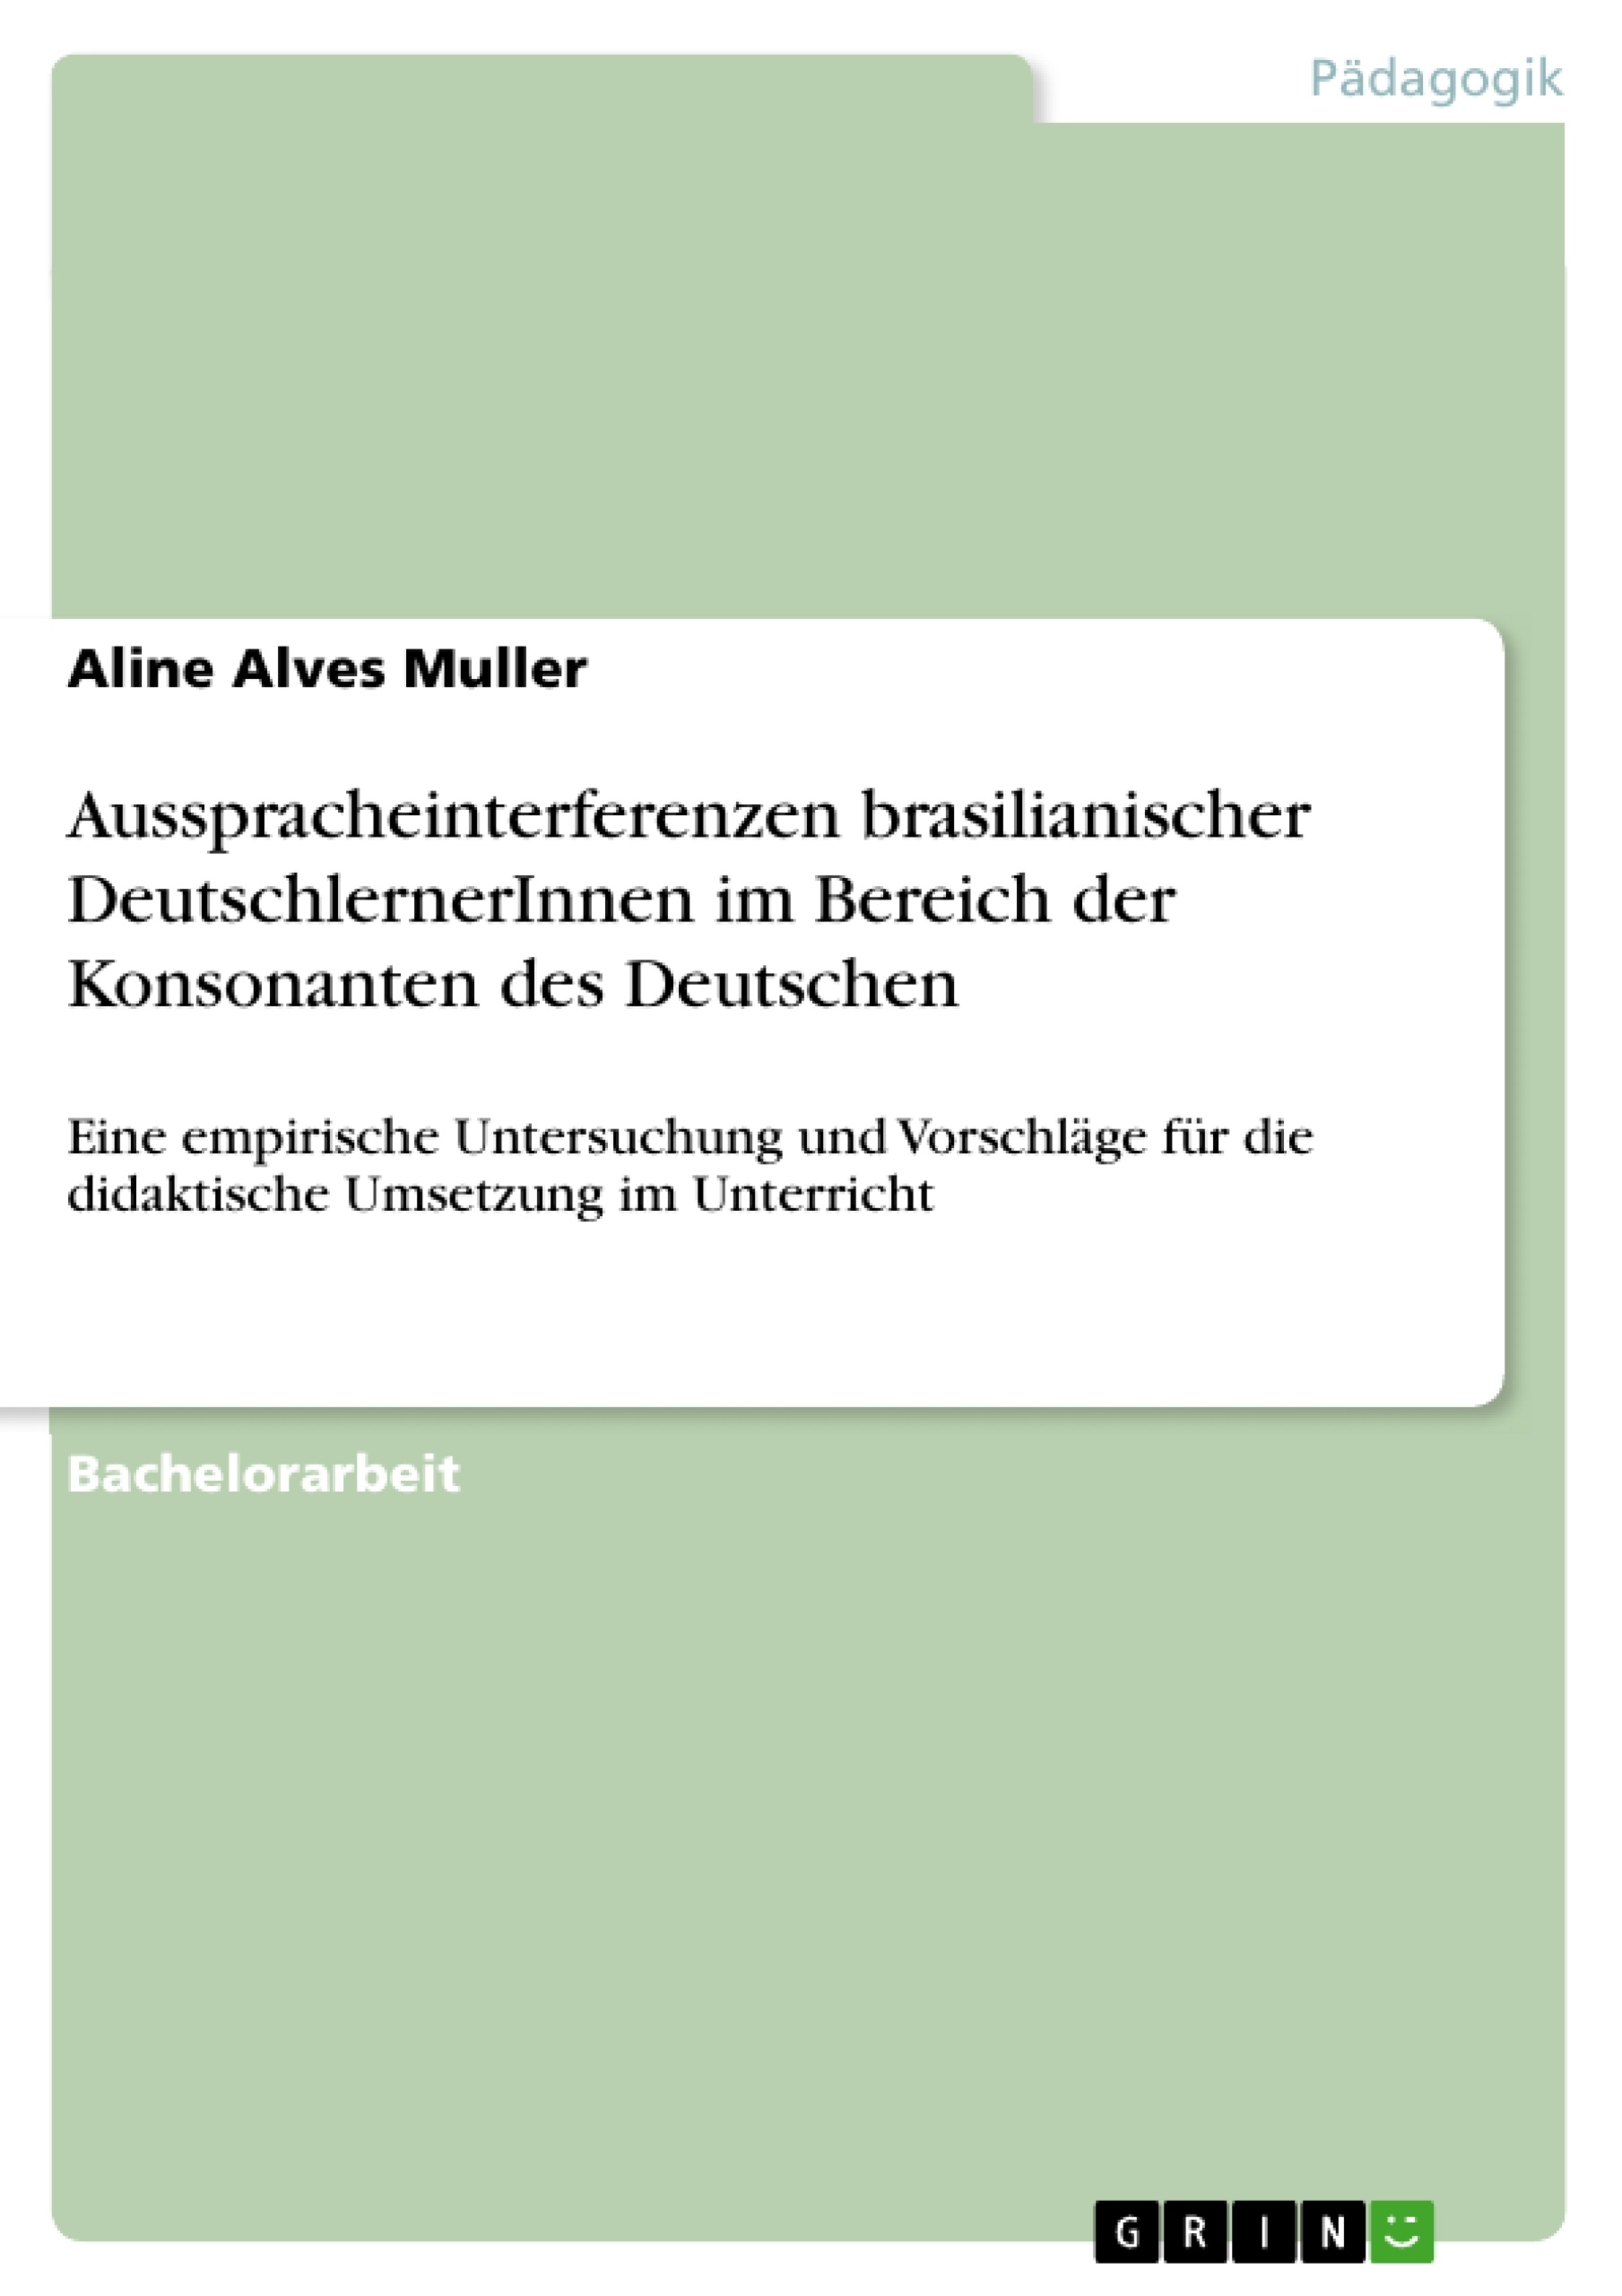 Título: Ausspracheinterferenzen brasilianischer DeutschlernerInnen im Bereich der Konsonanten des Deutschen